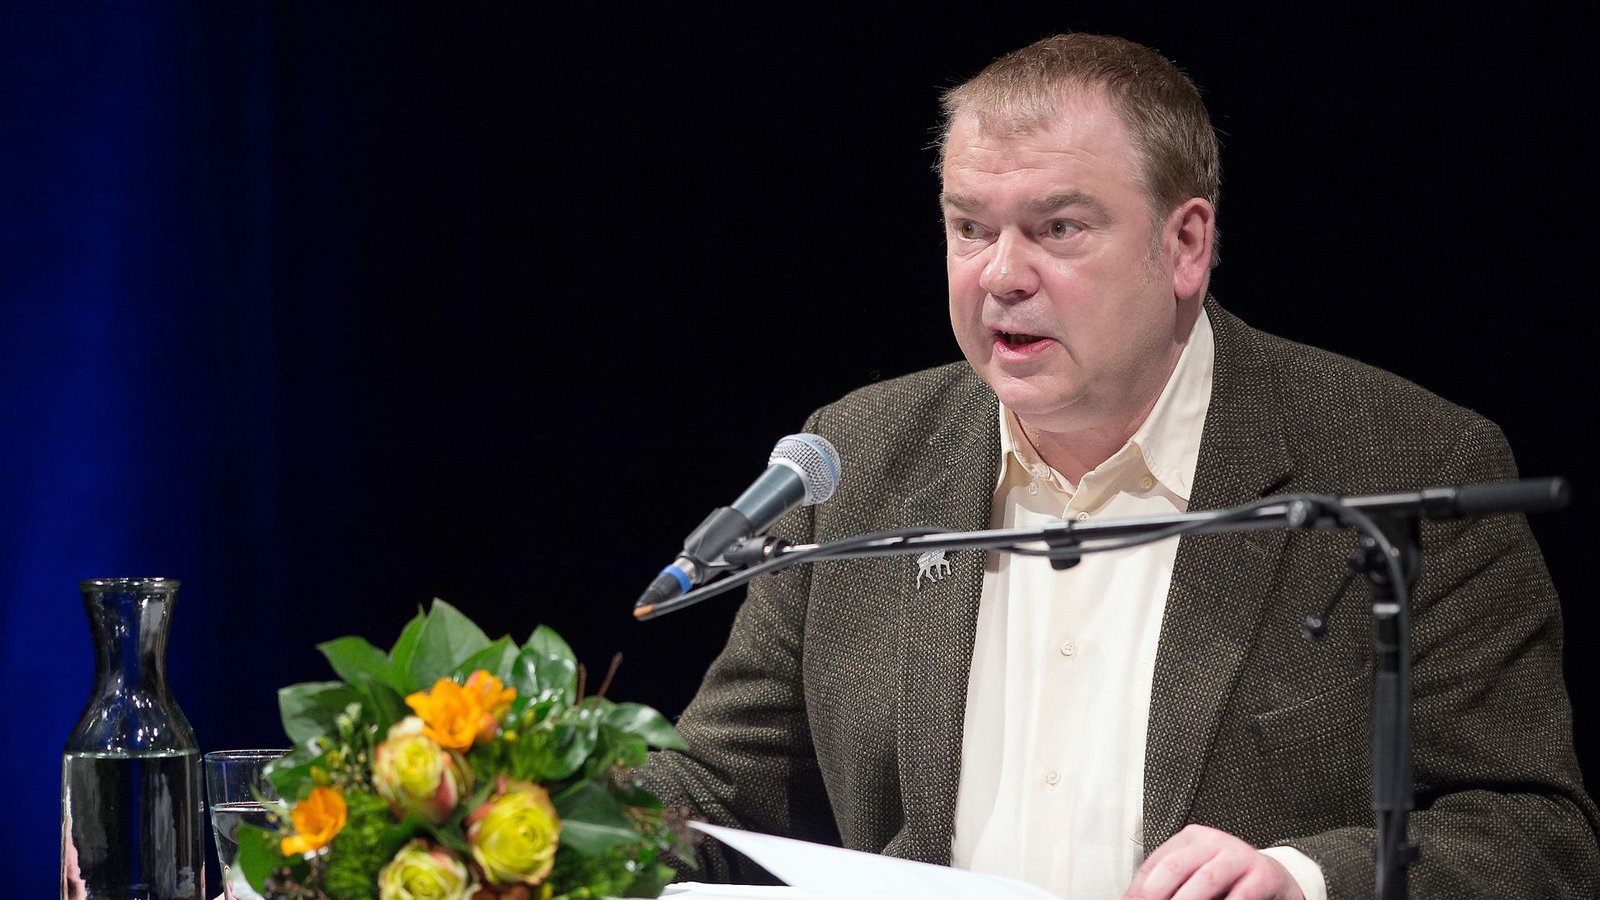 Der Autor Max Goldt bei der Verleihung des Satire-Preises "Göttinger Elch 2016".Foto: picture alliance / dpa